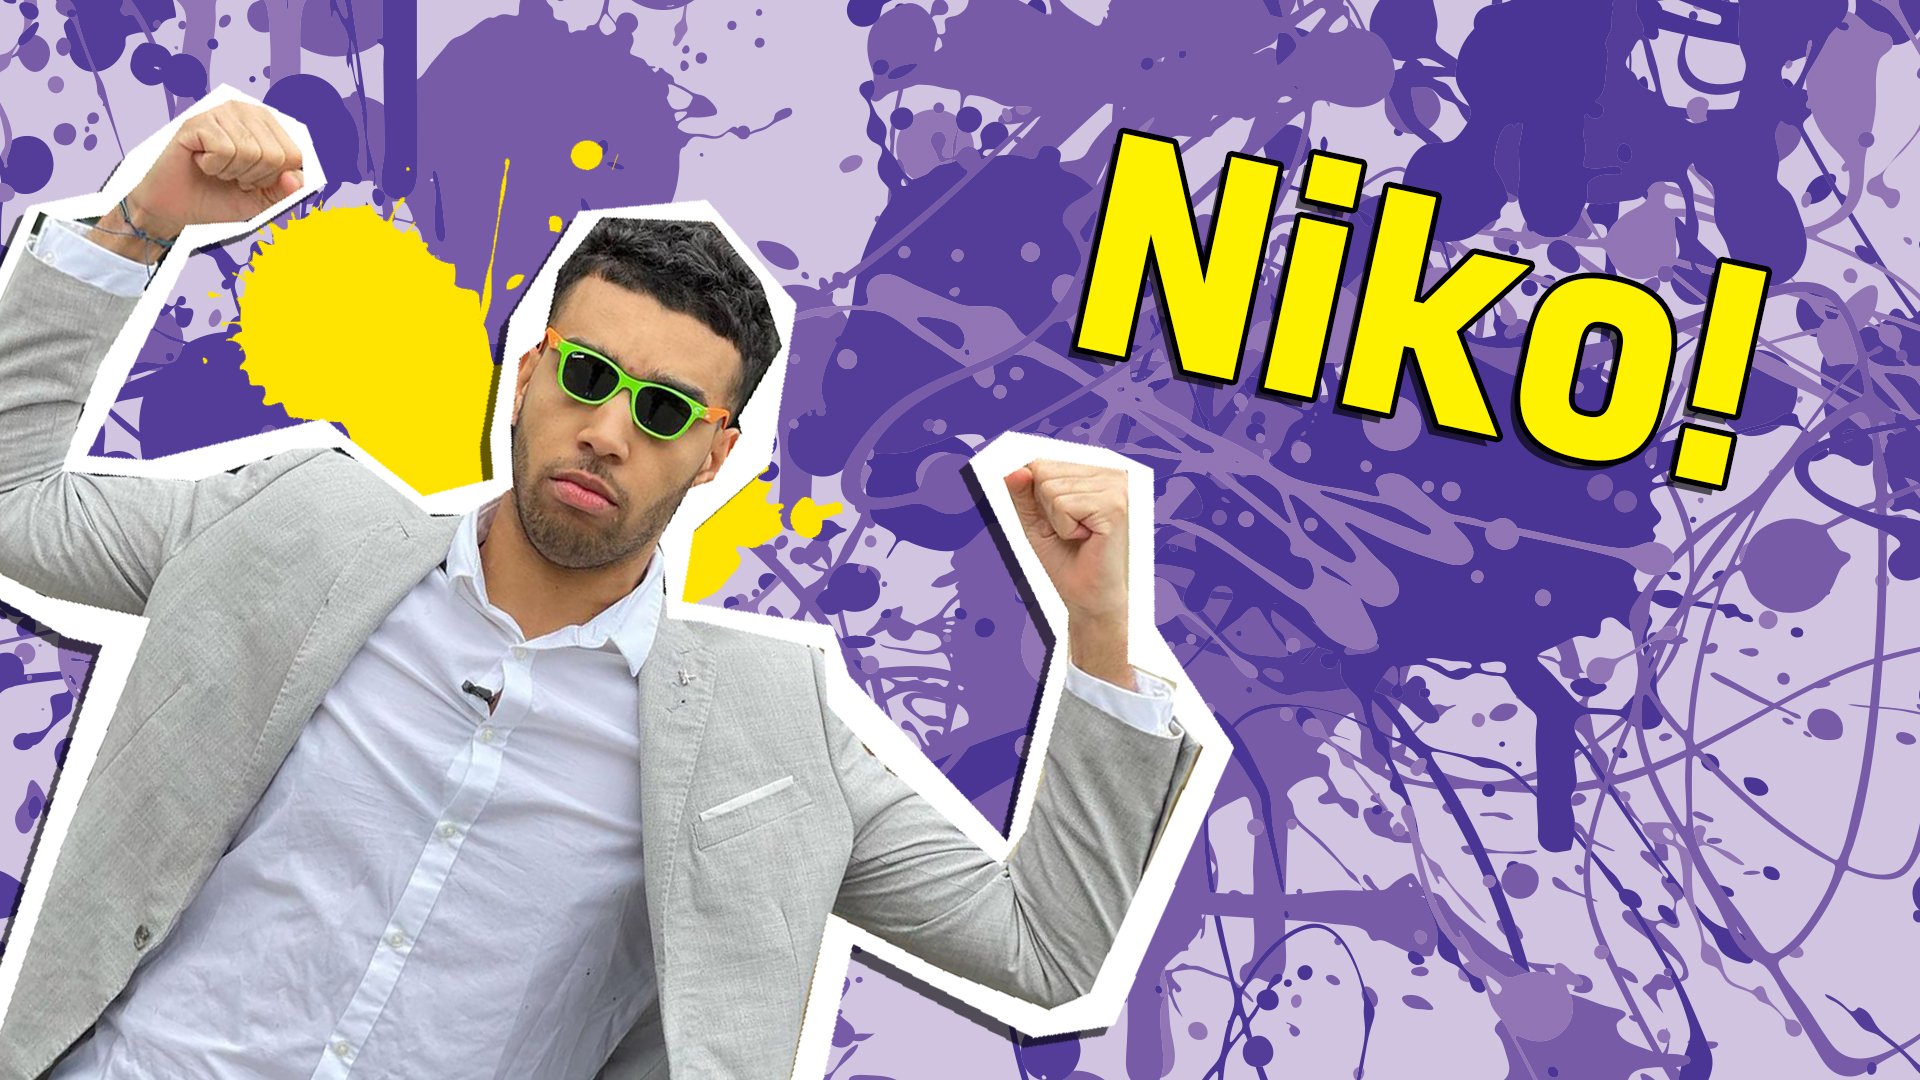 You're Niko!